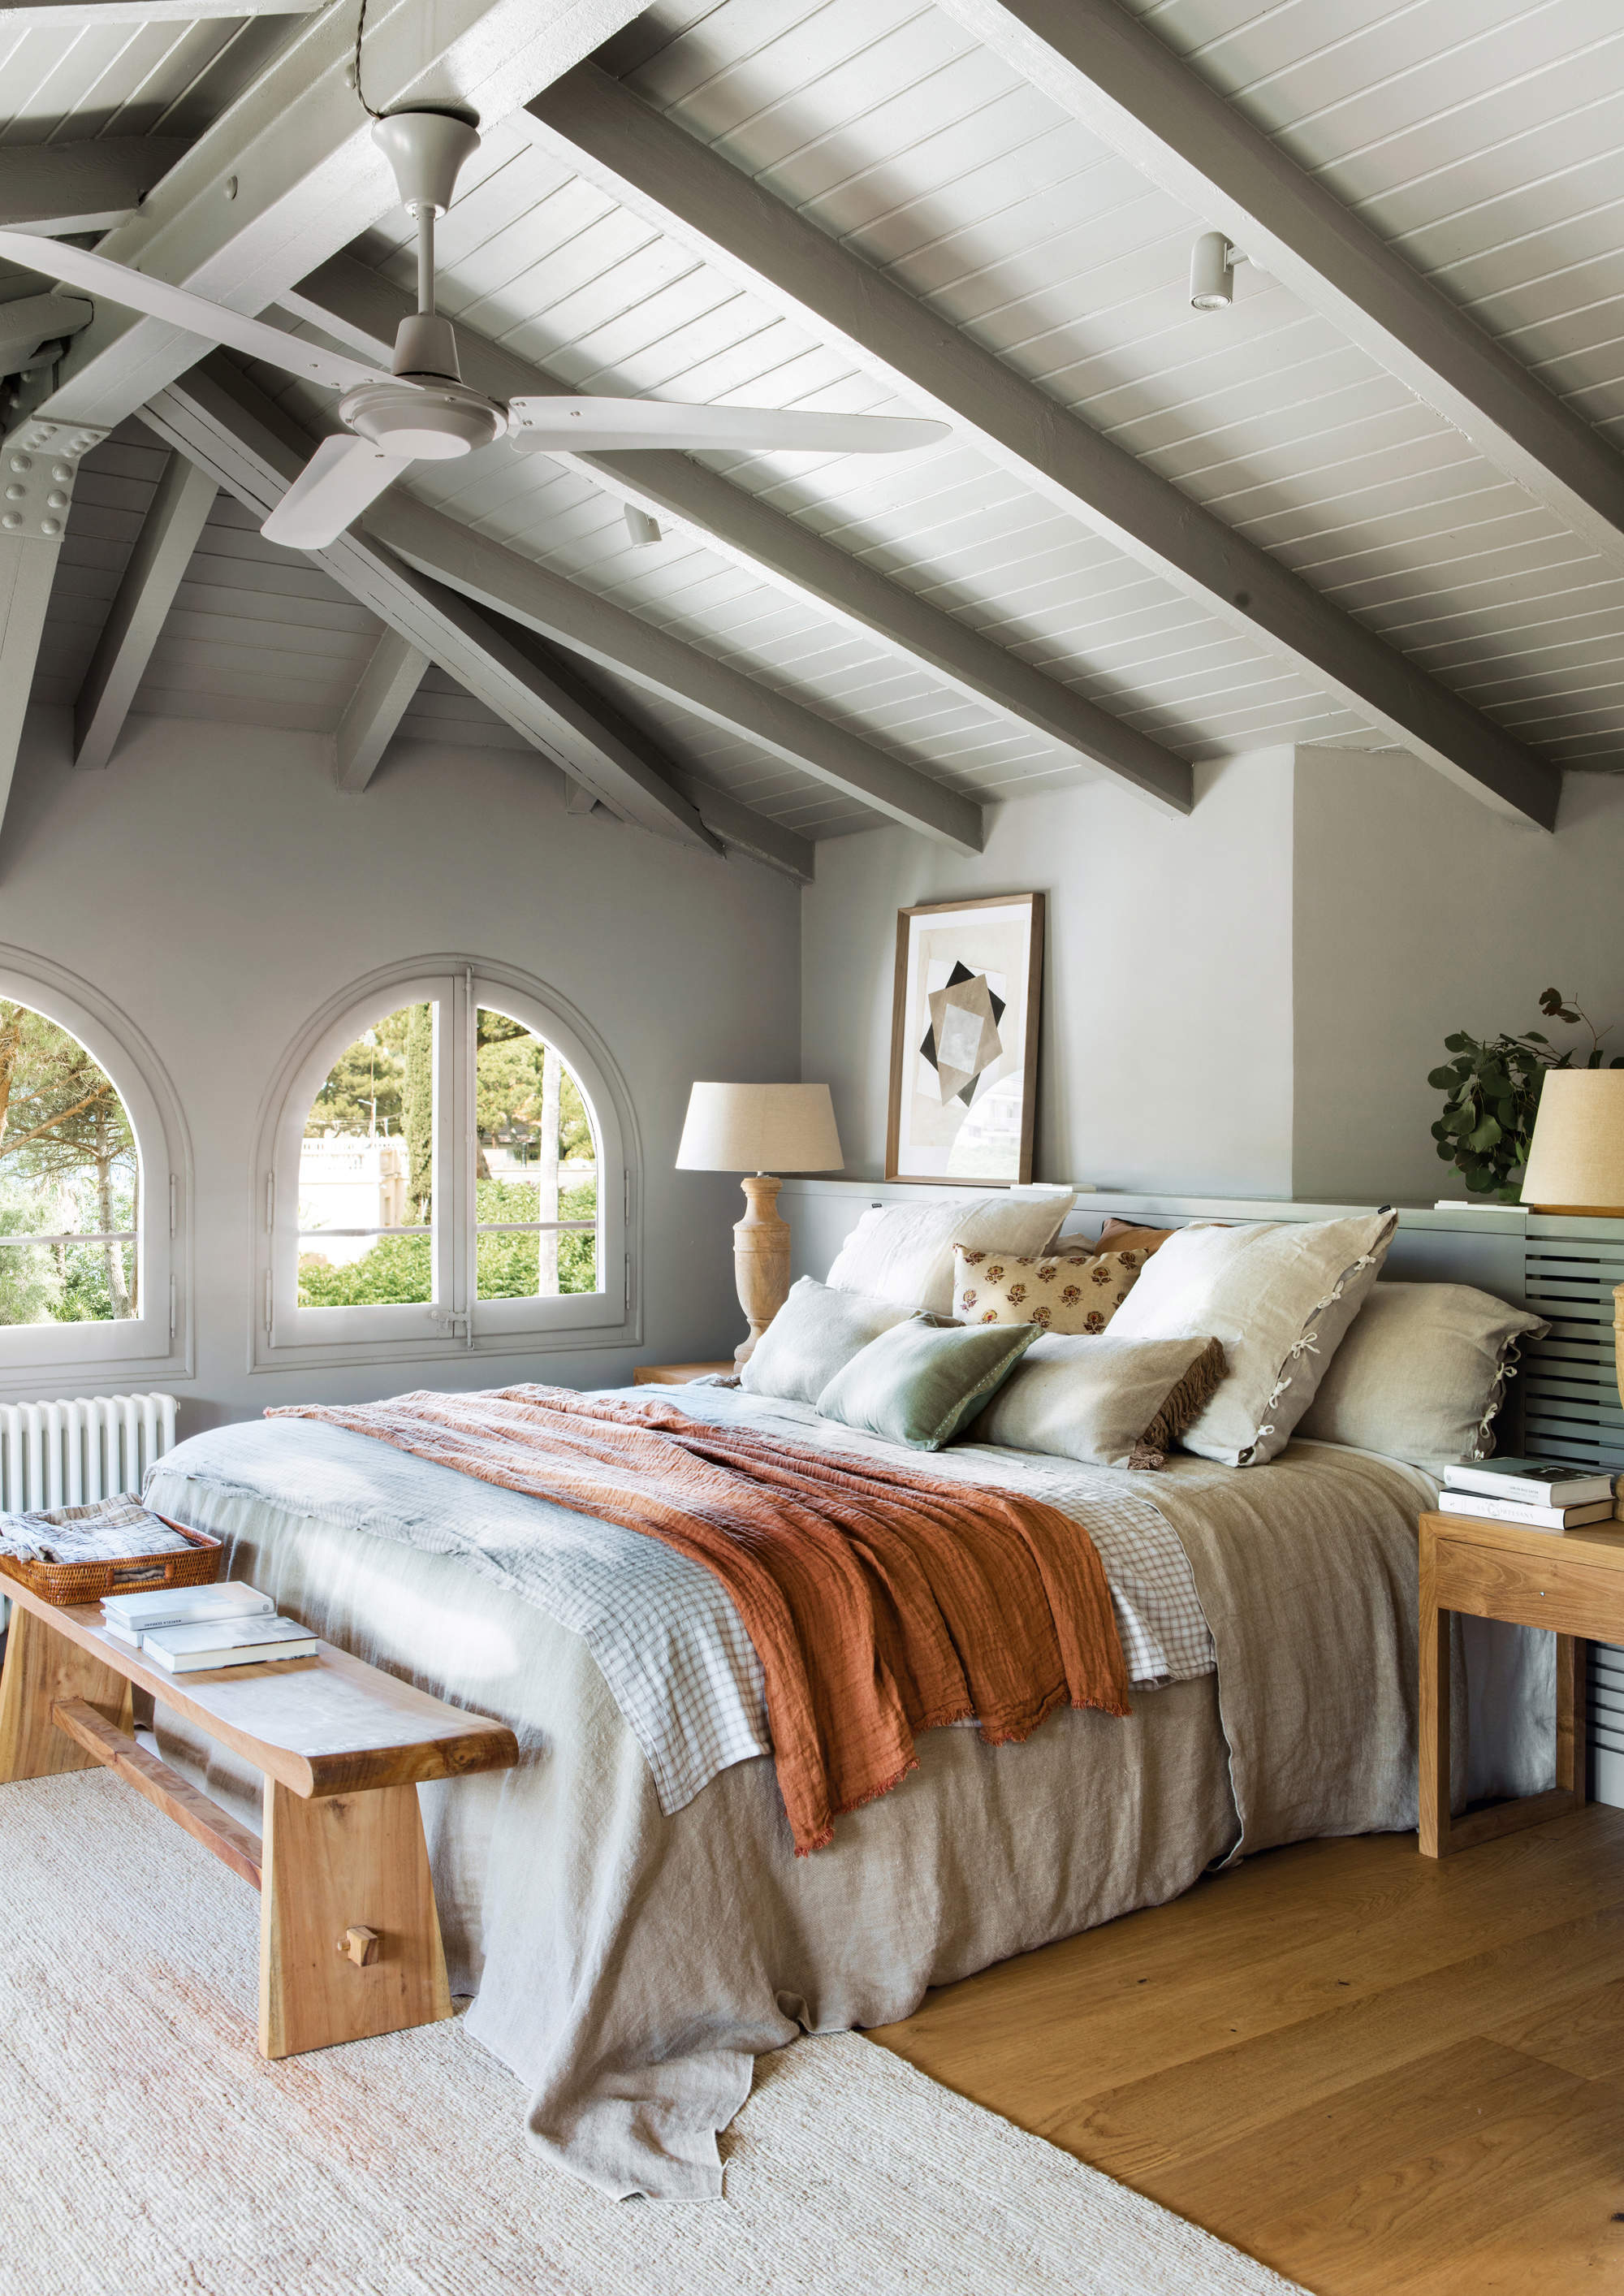 Dormitorio pintado de gris, con ventanas en forma de arco.